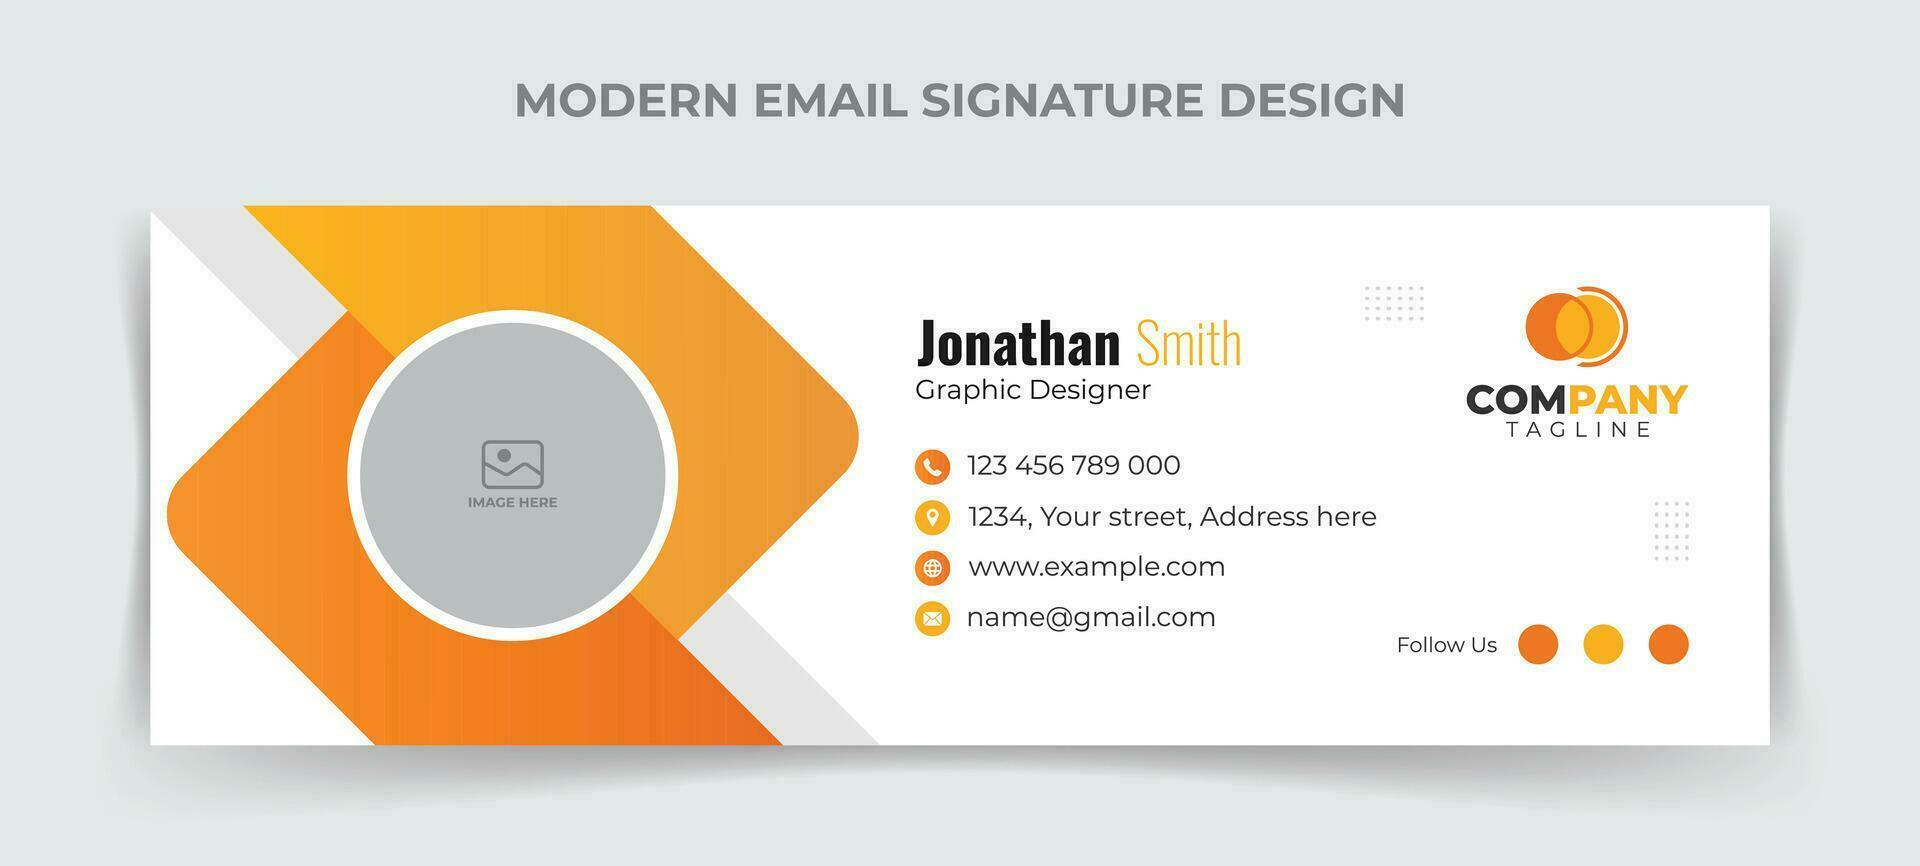 creativo y minimalista correo electrónico firma o correo electrónico pie de página modelo diseño vector